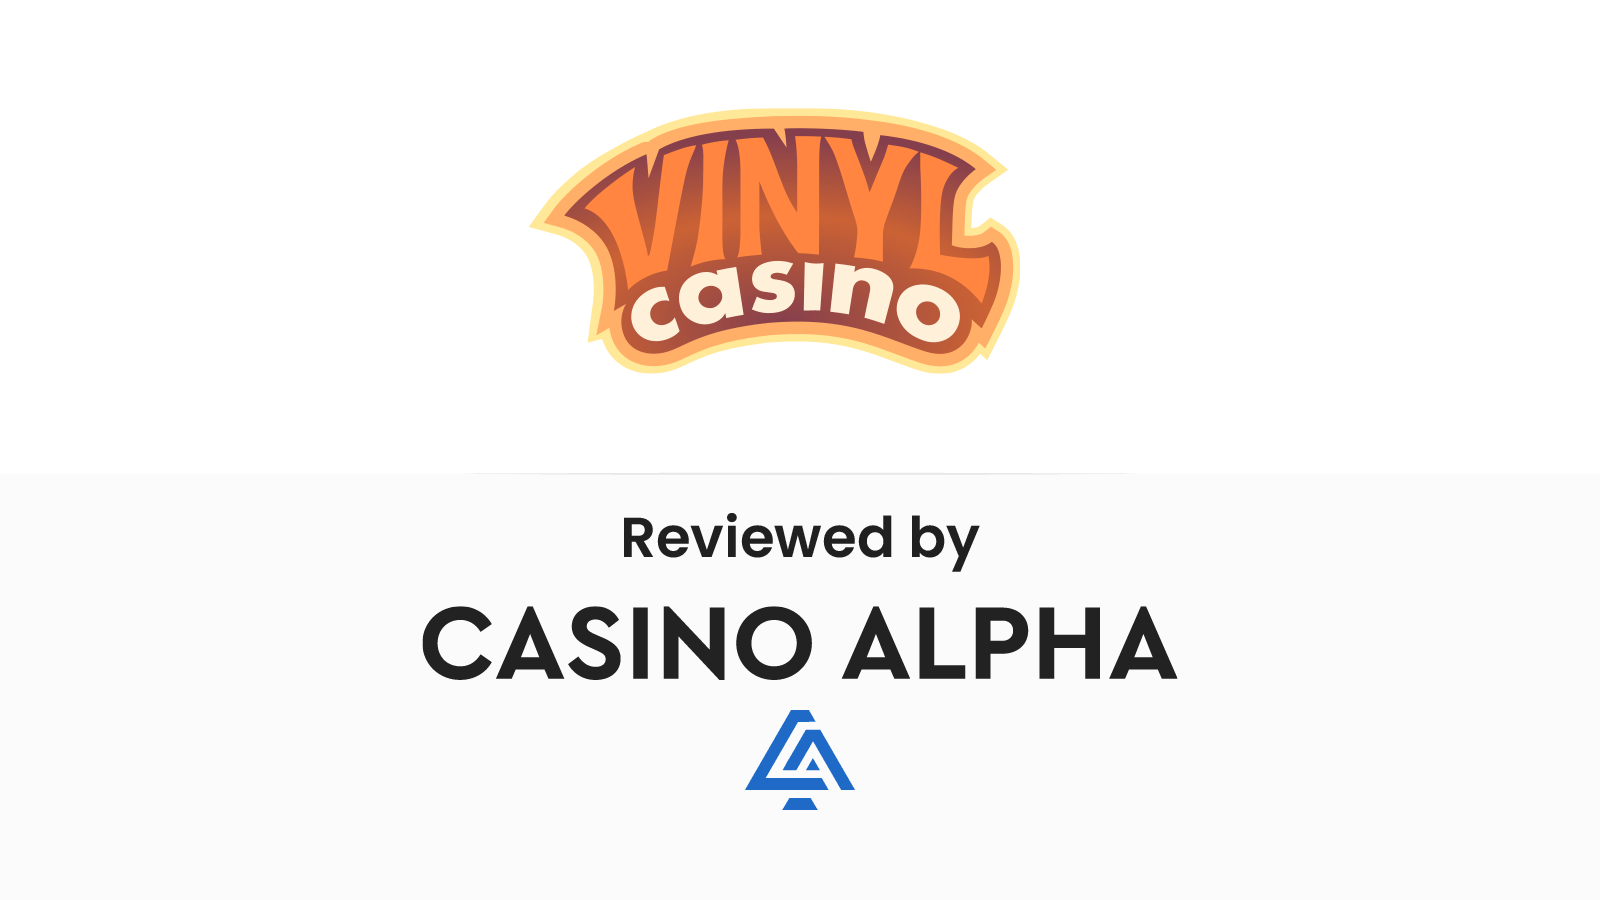 Vinyl Casino Review & Bonus codes